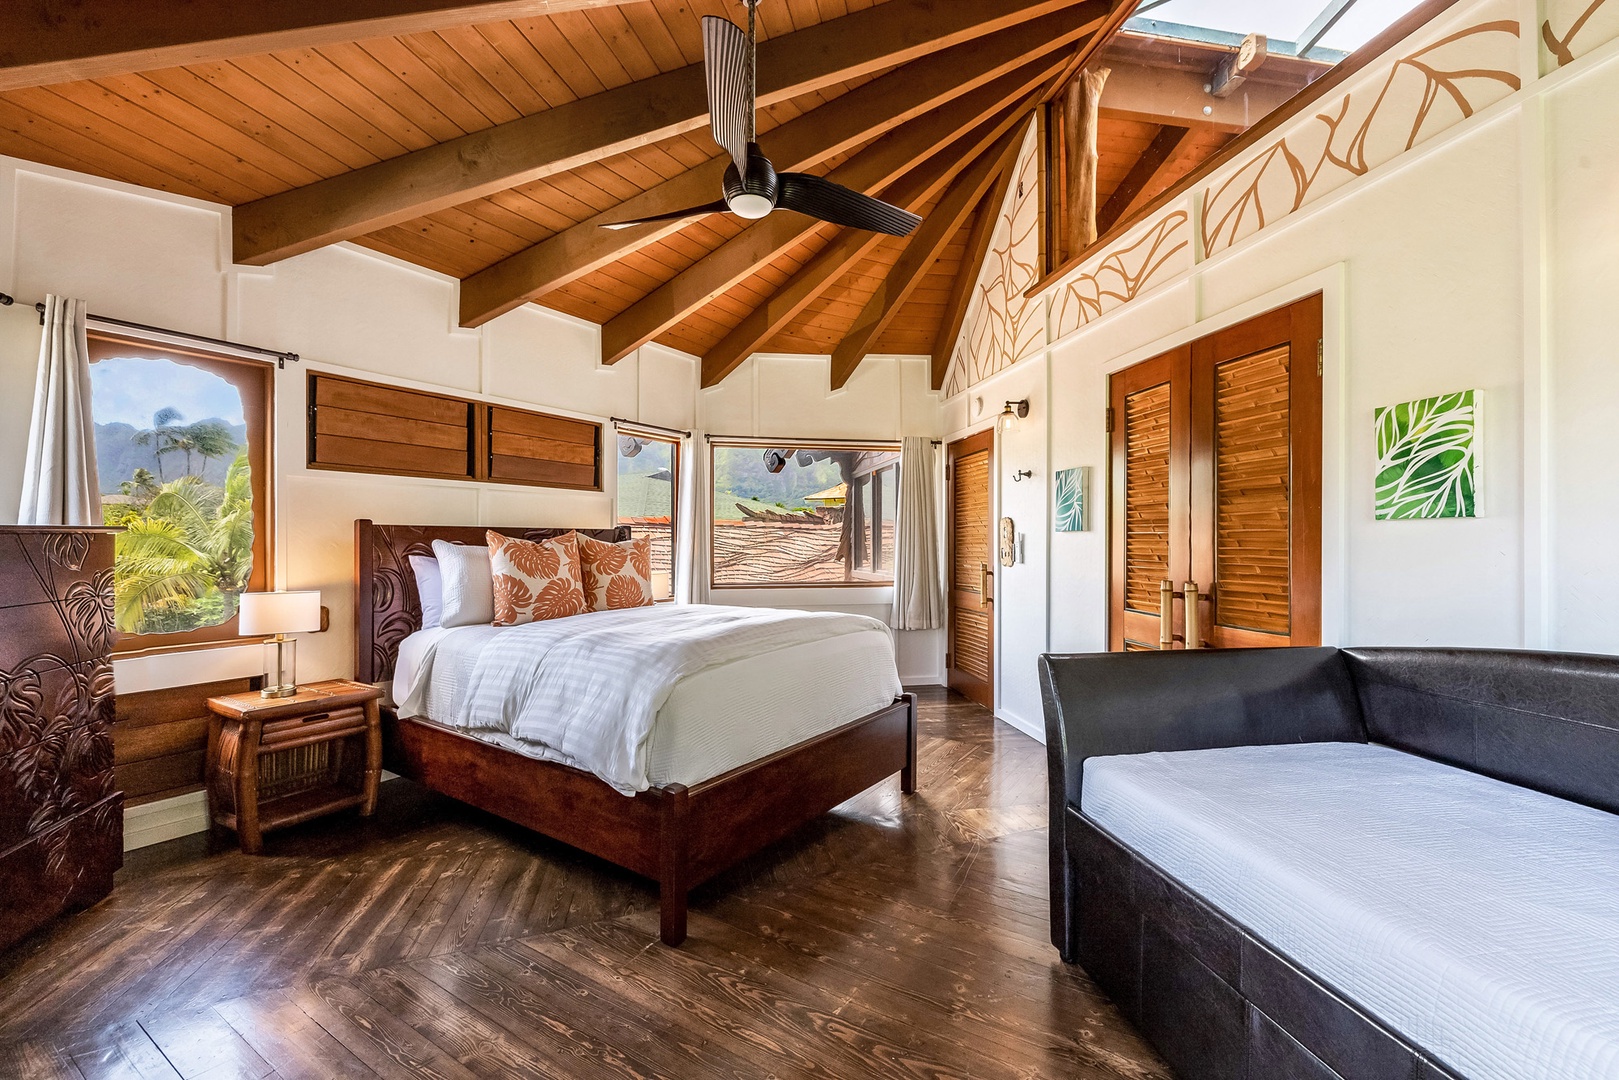 Waimanalo Vacation Rentals, Hawaii Hobbit House - Guest bedroom with queen bed.